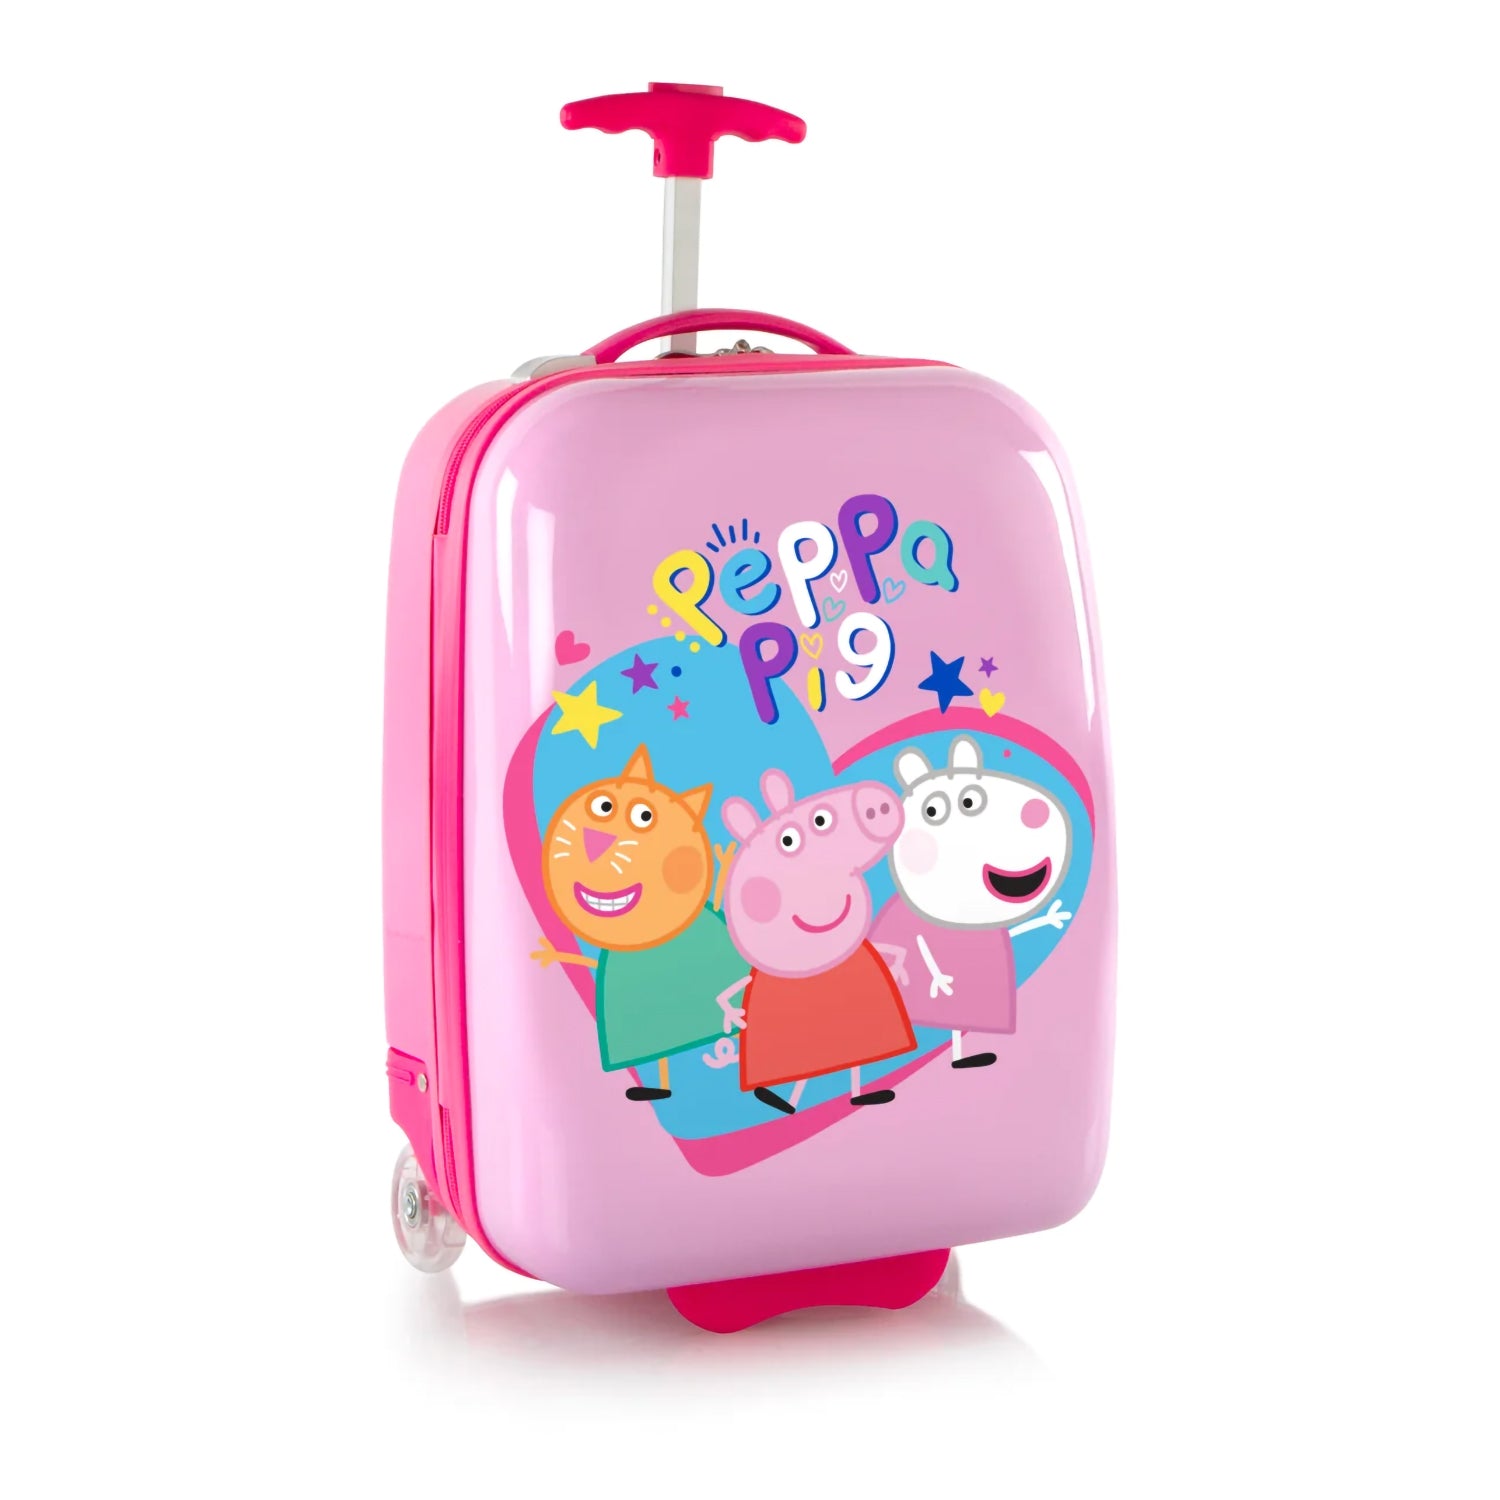 Heys Peppa Pig Kids Luggage